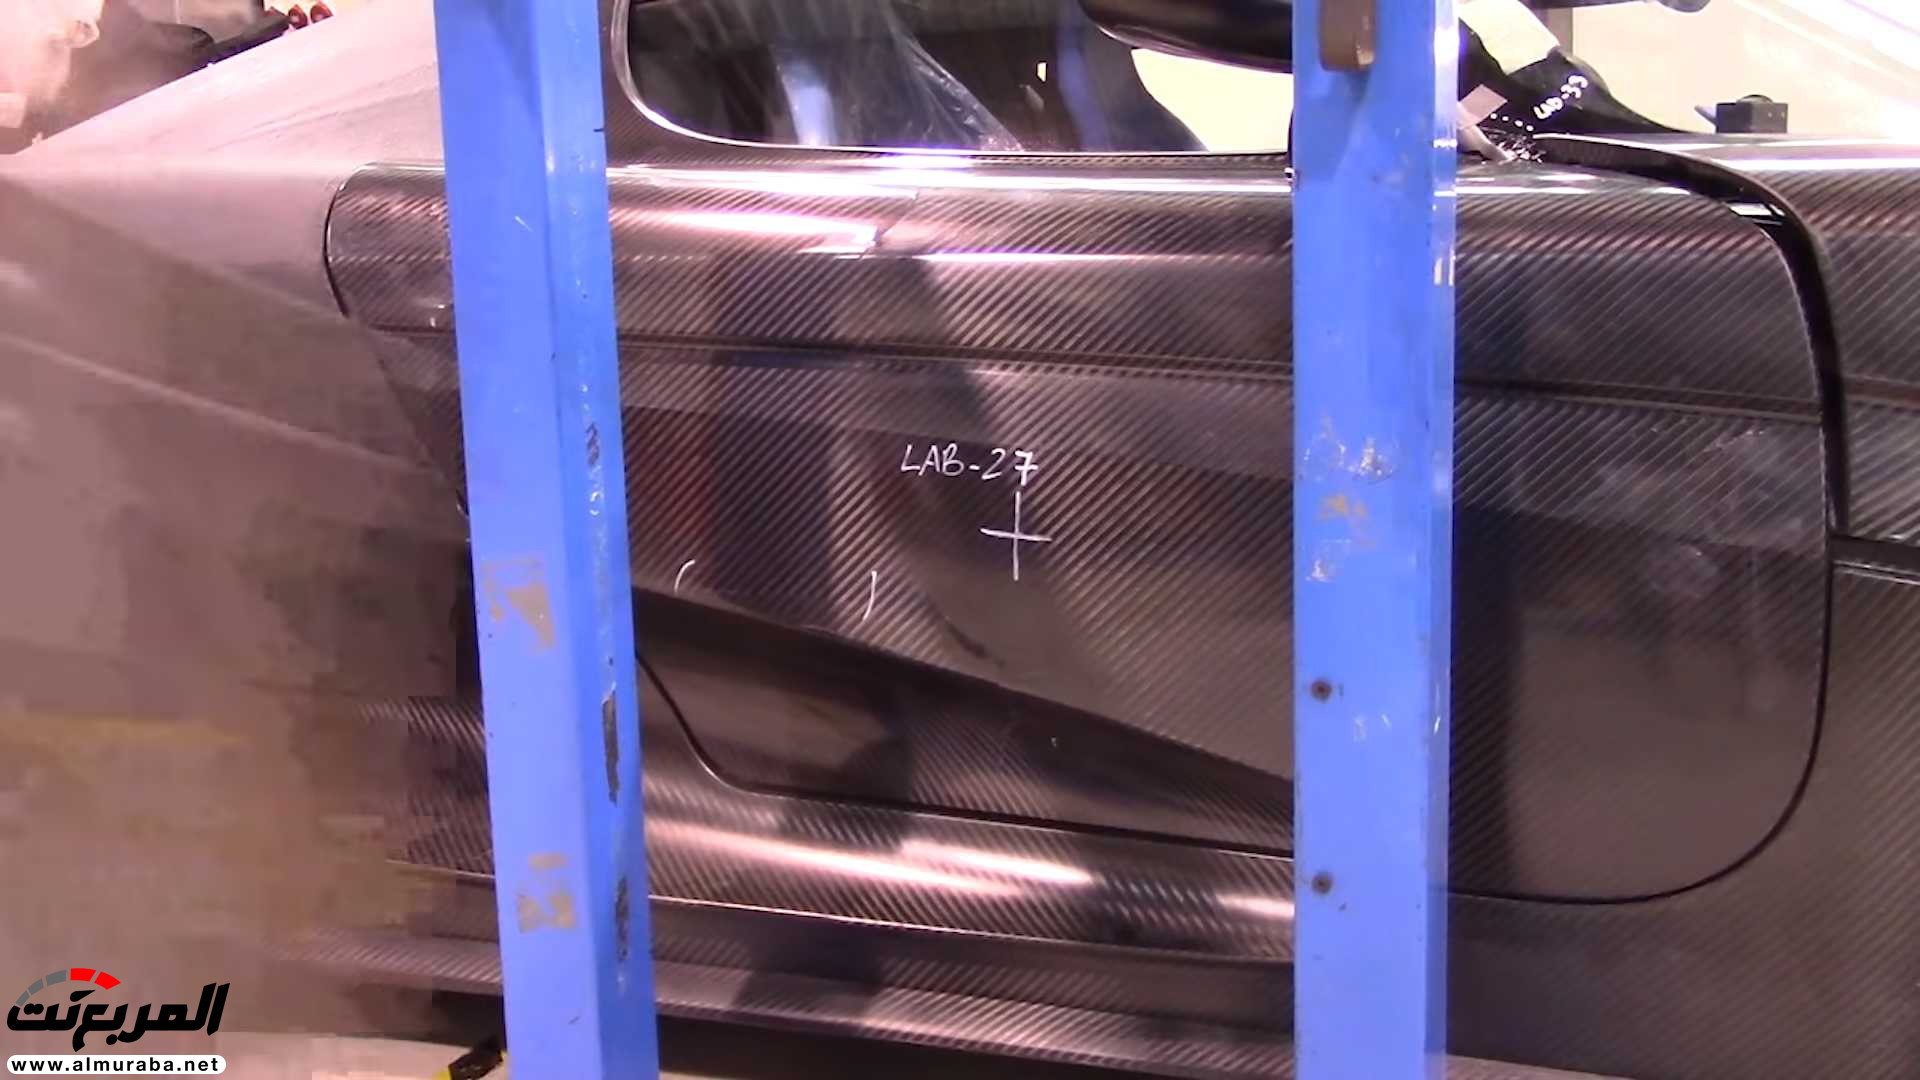 "بالفيديو" اختبار تصادم سيارة كوينيجسيج بقيمة 7.5 مليون ريال! 10